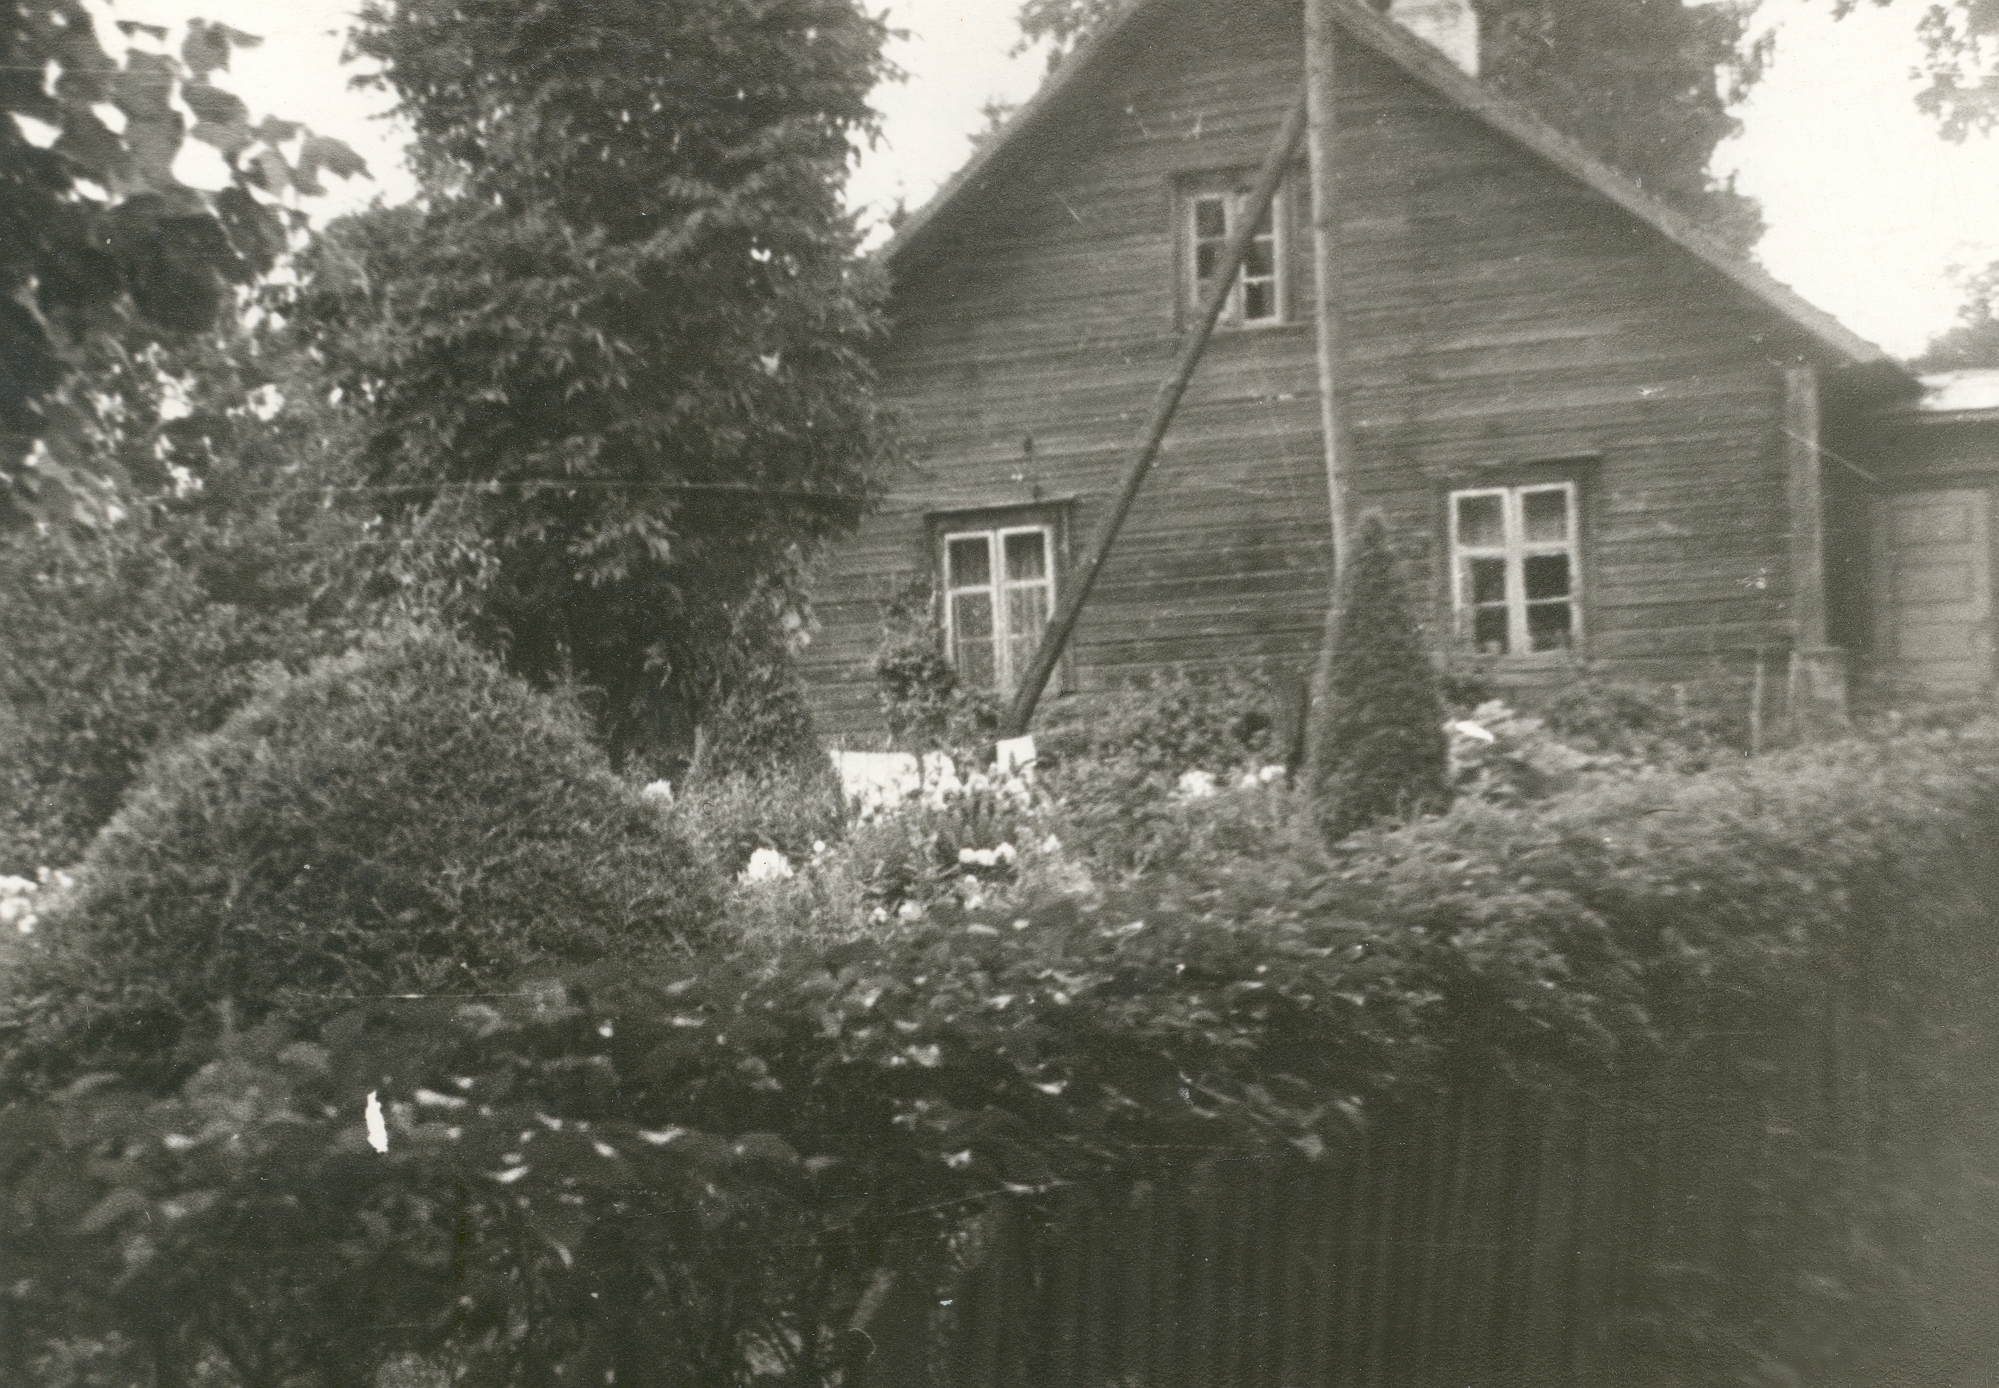 Mihkel Veske's birthplace in Holstres Veske farm